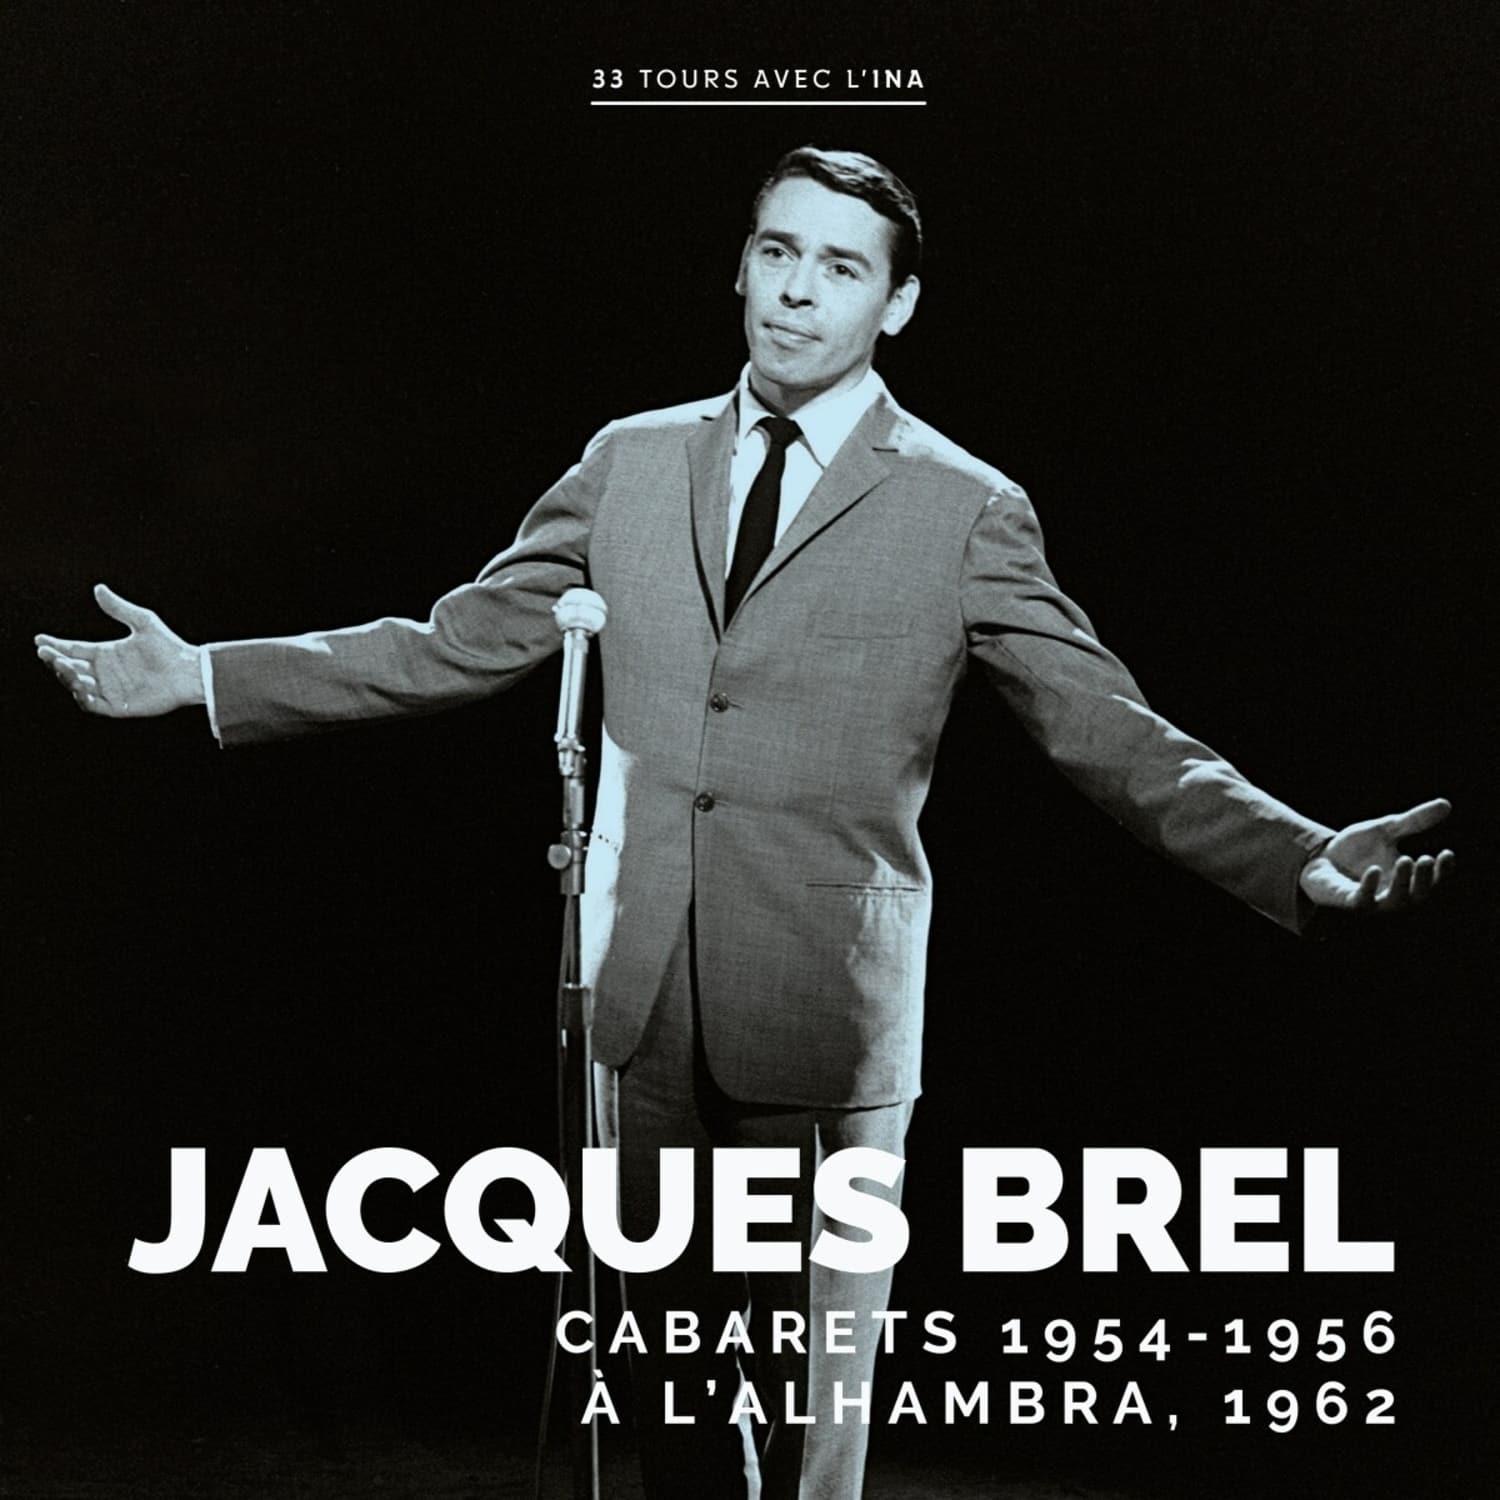 Jacques Brel - CABARETS 